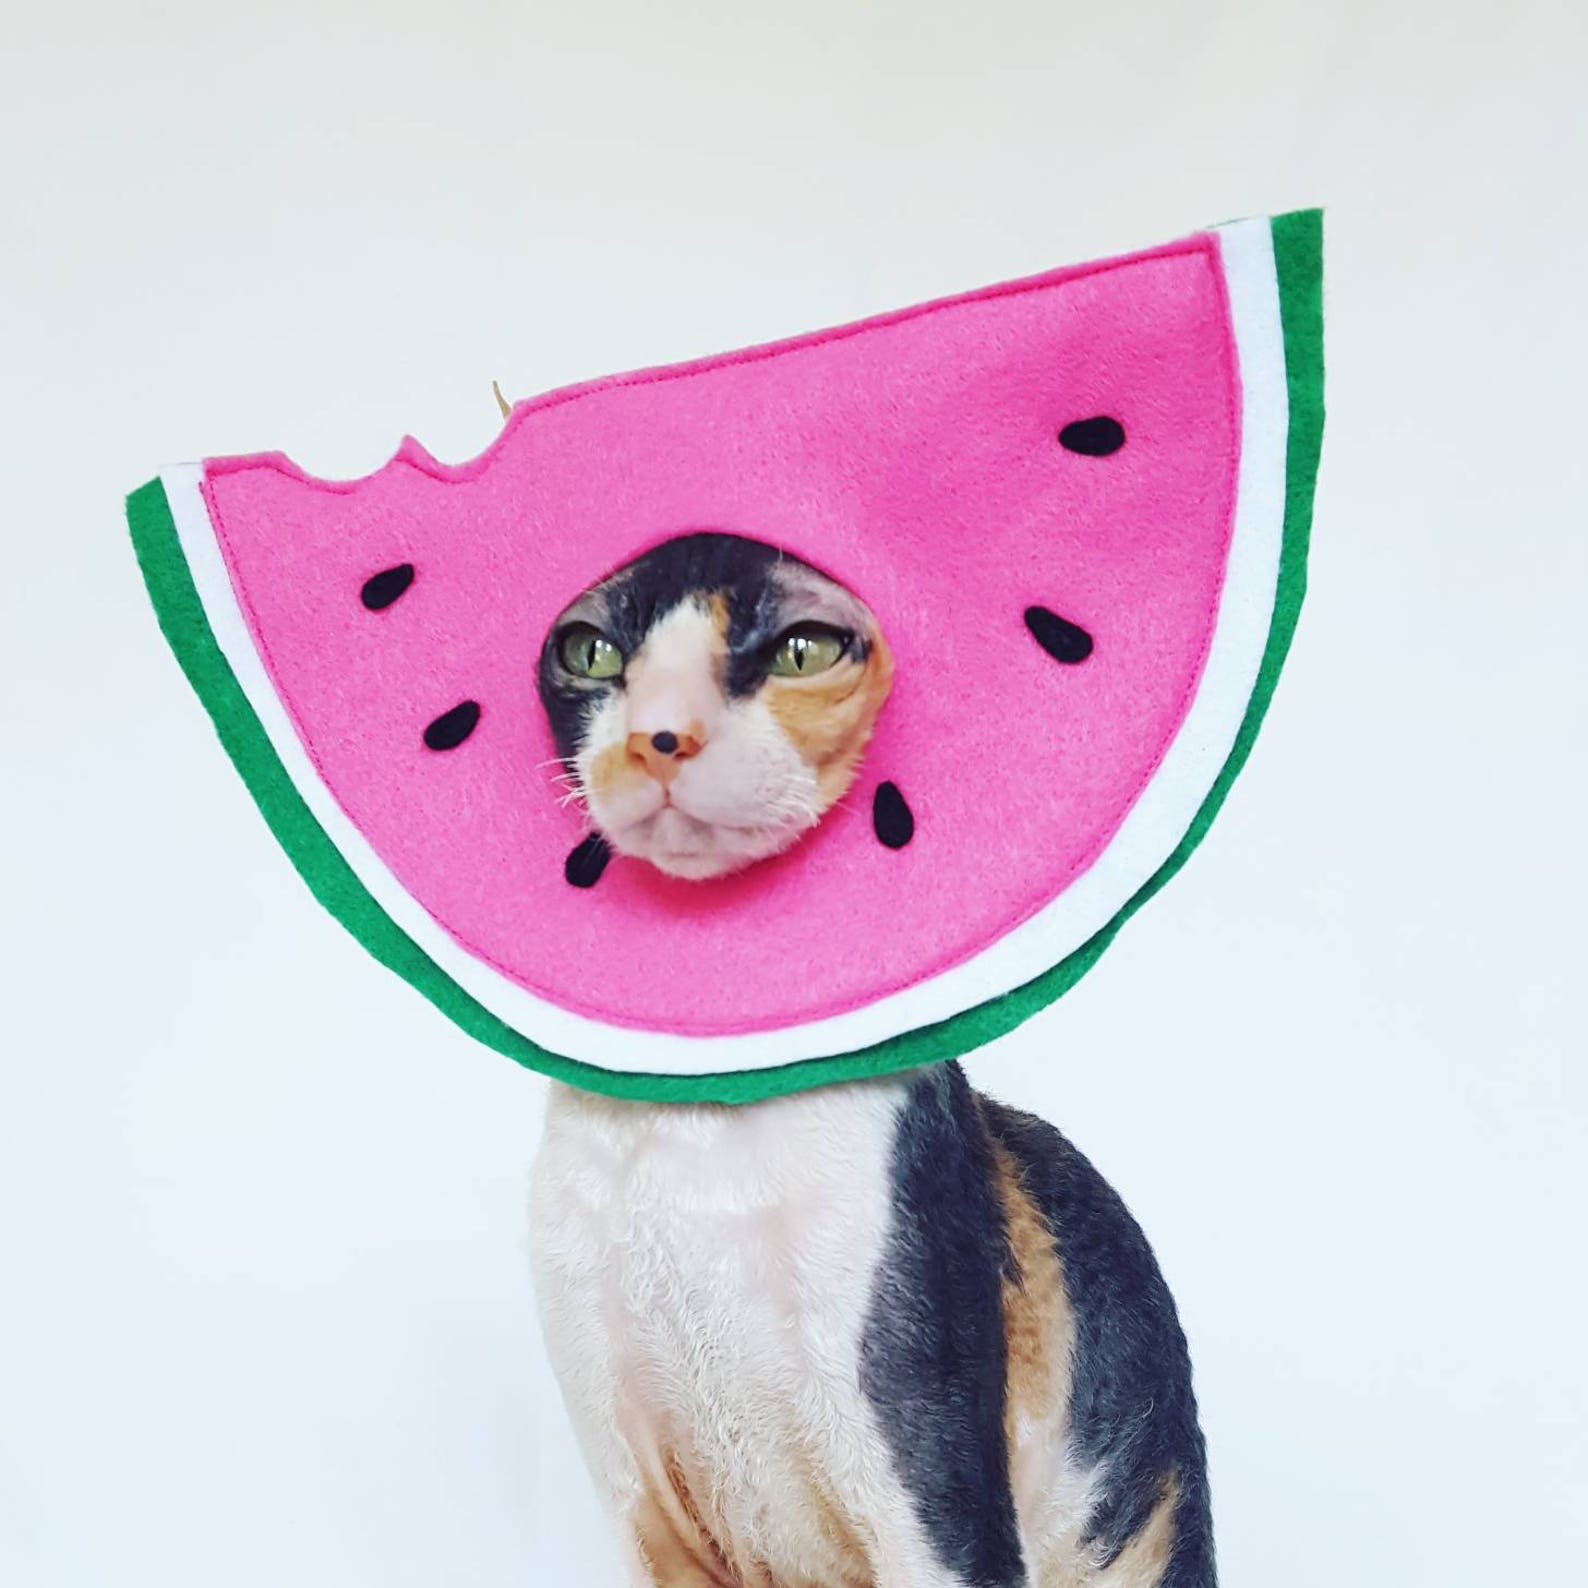 Арбуз кошкам. Воротник арбузик для кошки. Арбуз кошкасобка. Cat Melon hat. Watermelon hat.